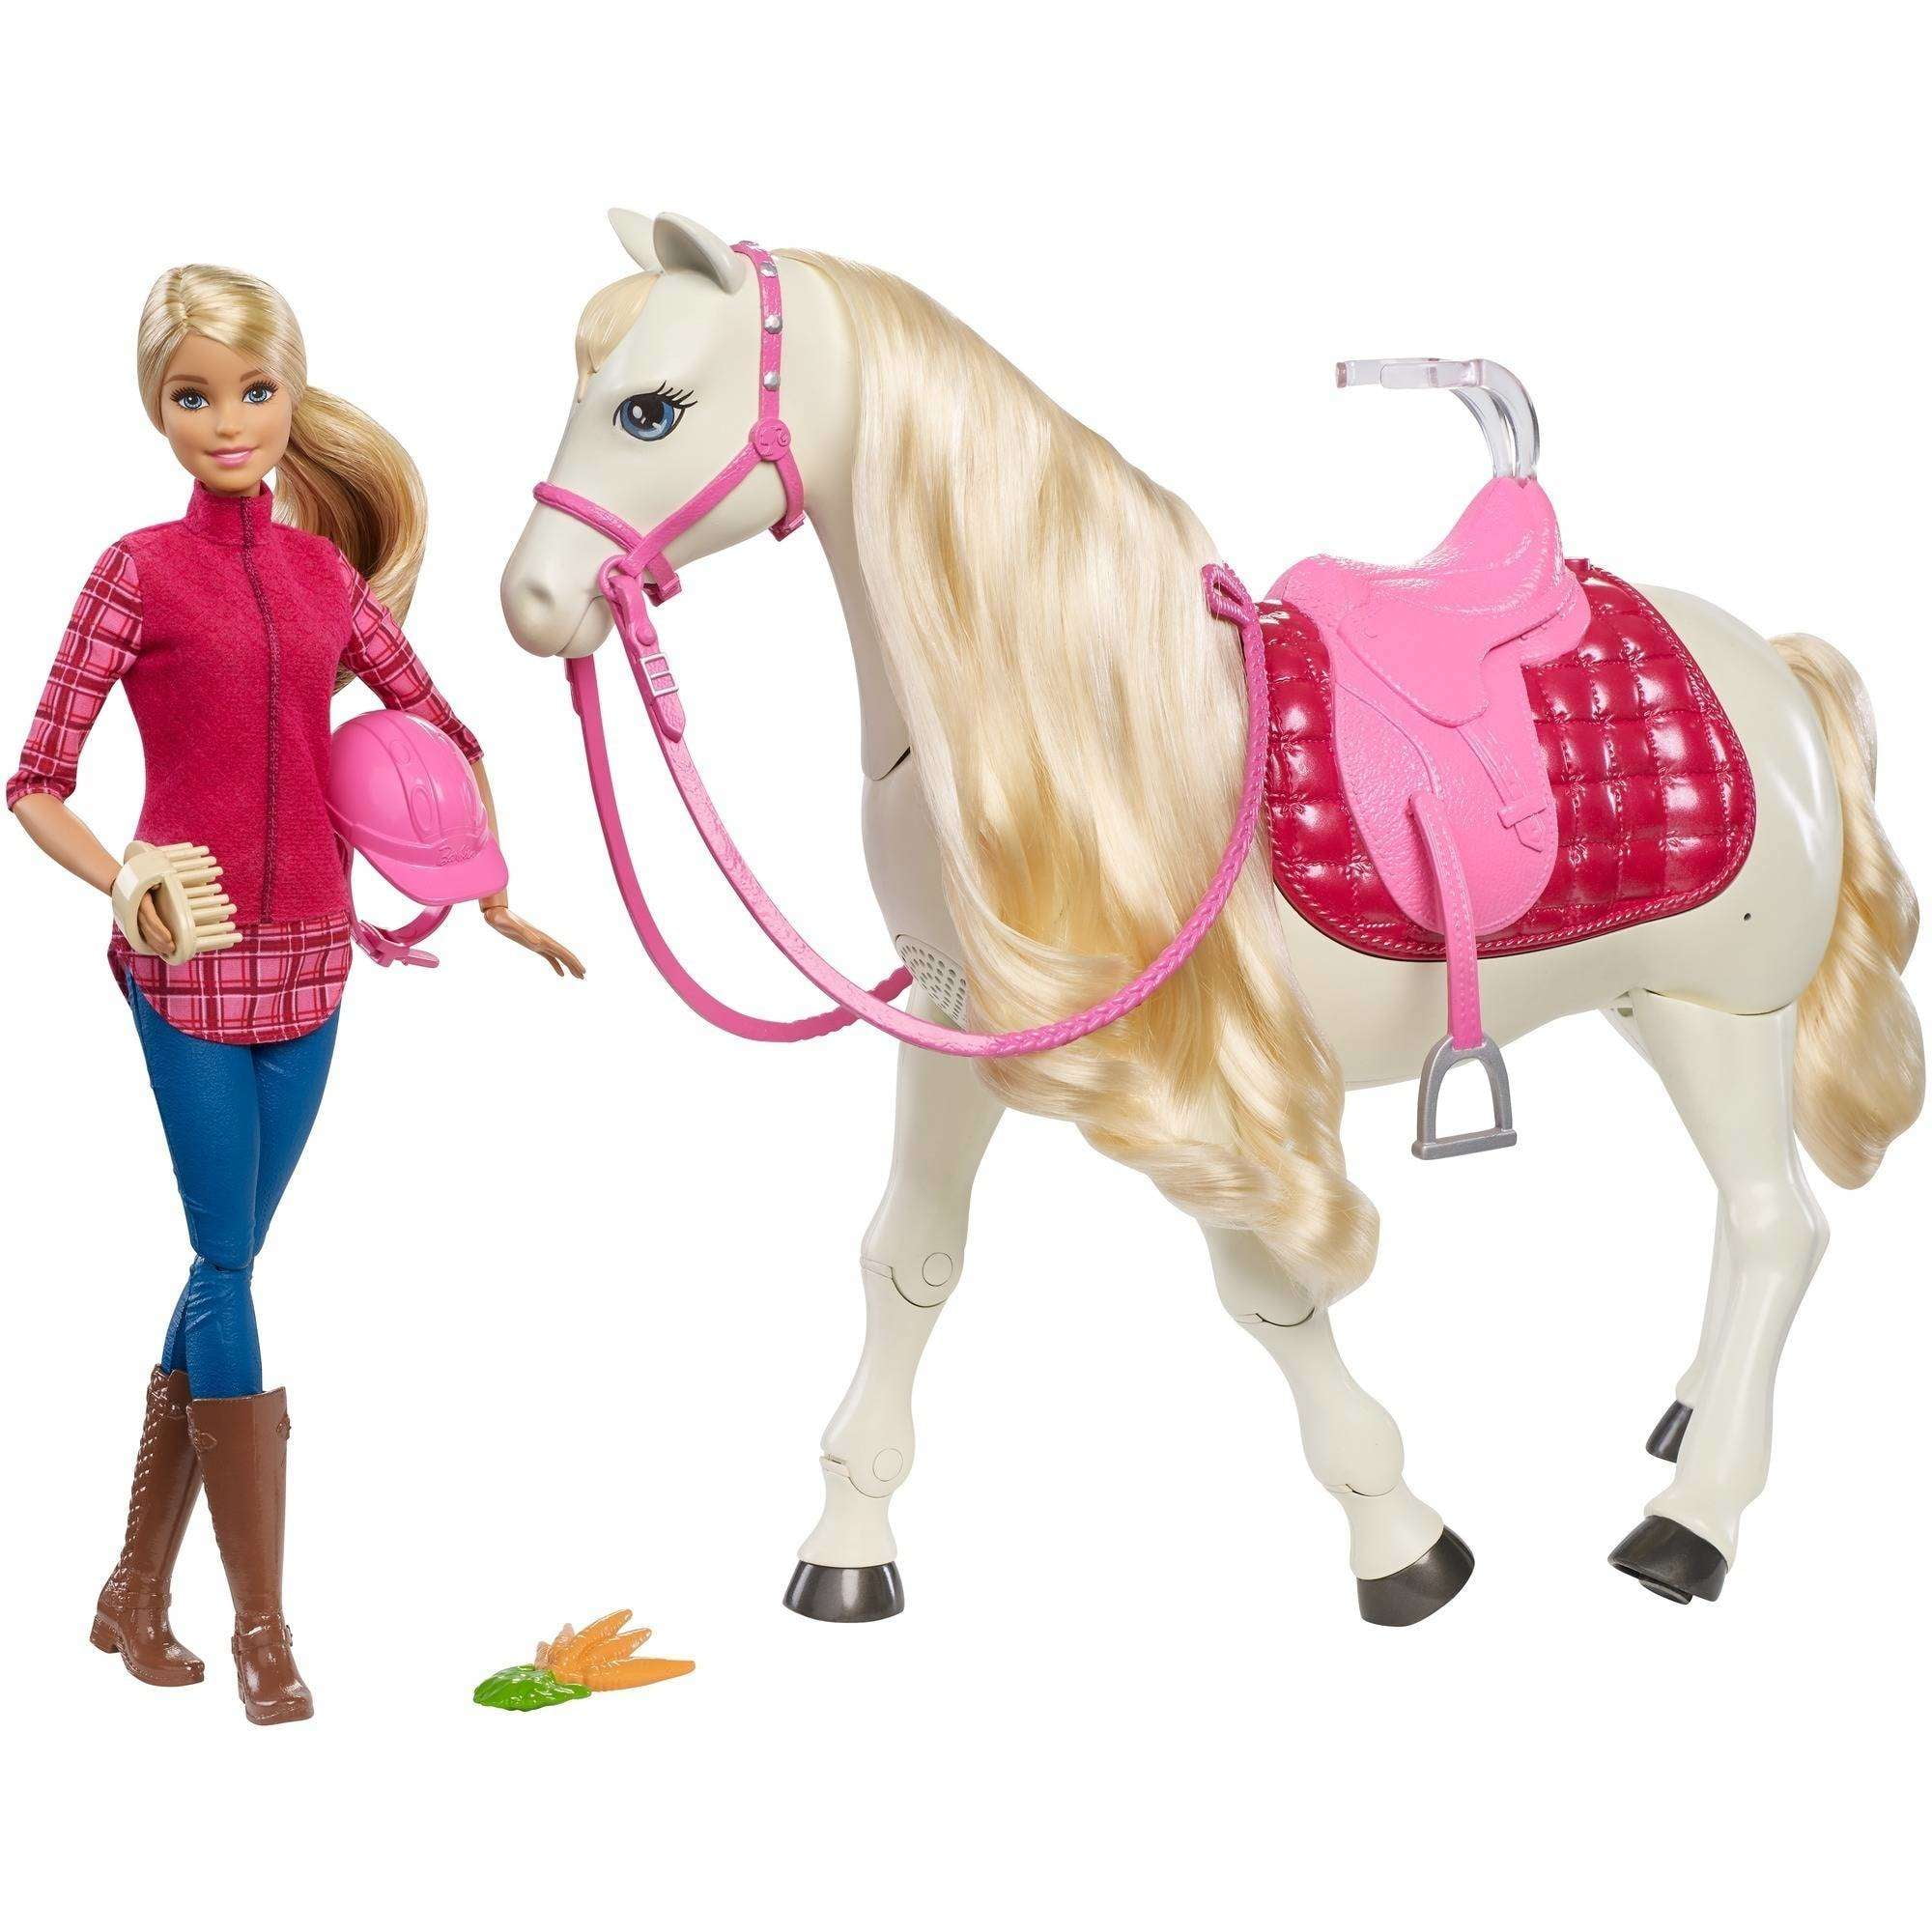 Blonde toys. Набор Barbie и лошадь мечты, 29 см, frv36. Игровой набор Barbie наездница с лошадью fxh13. Кукла Барби наездница.